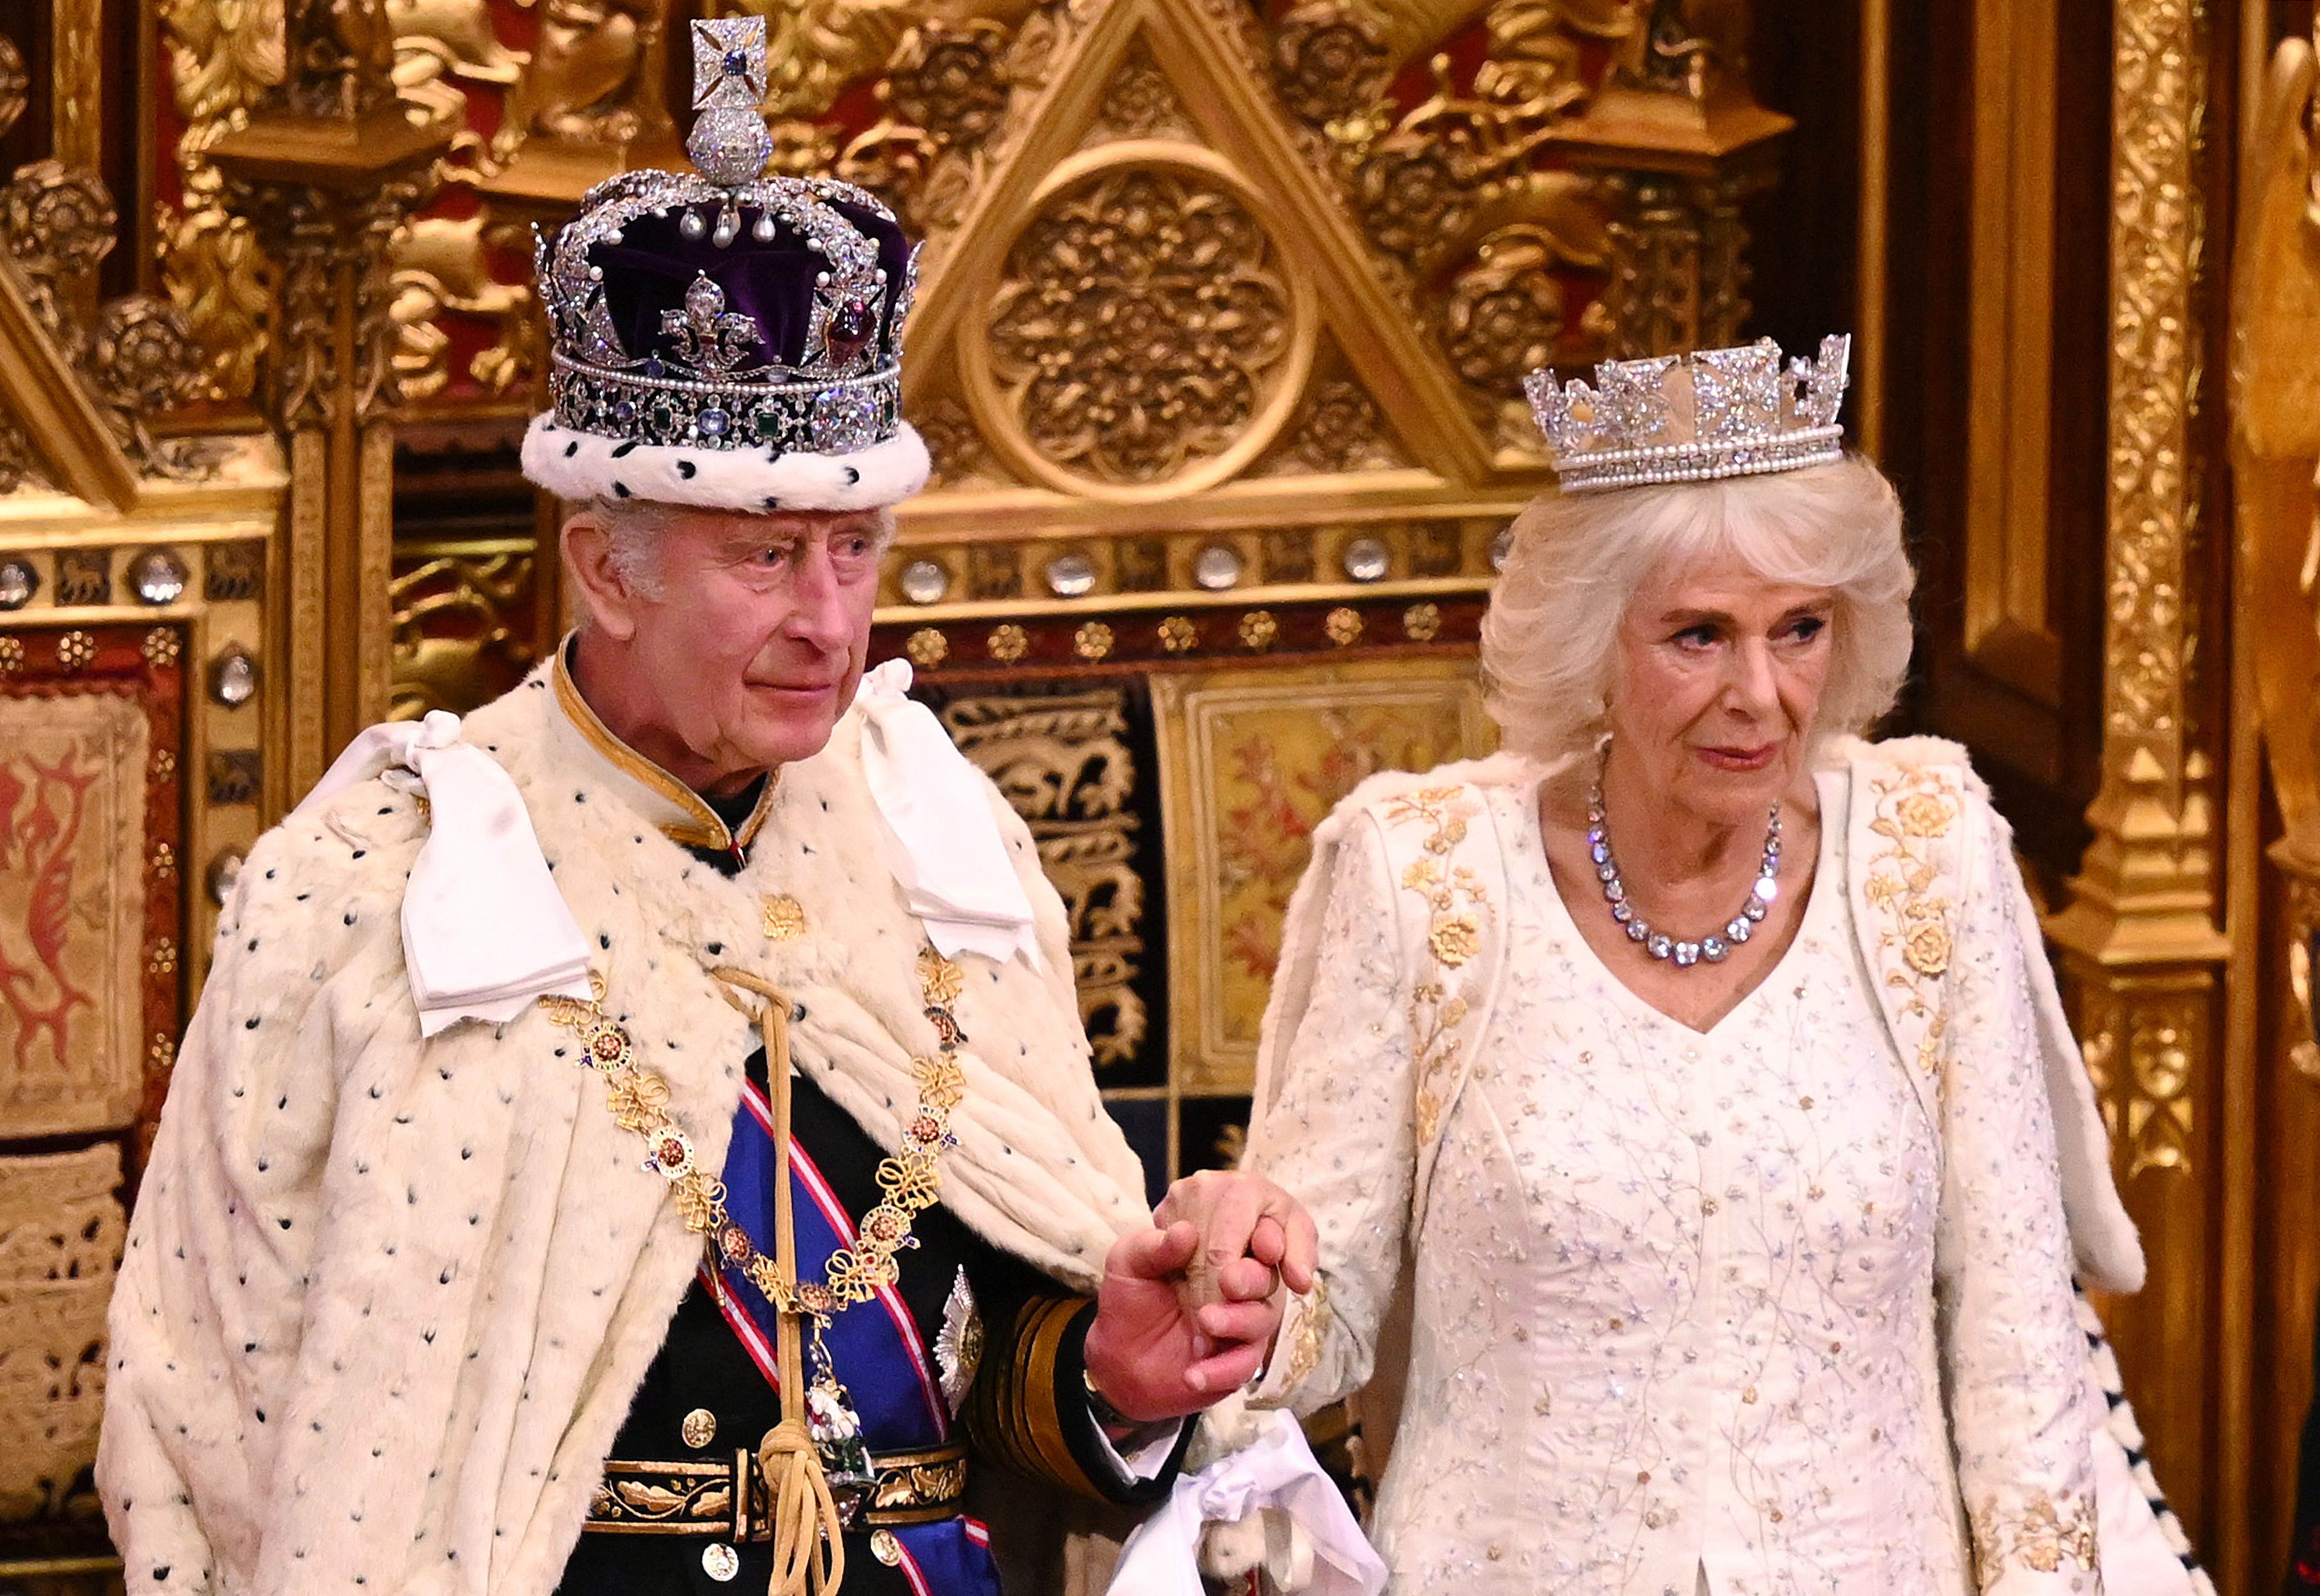 Charles and Camilla at the coronation in May